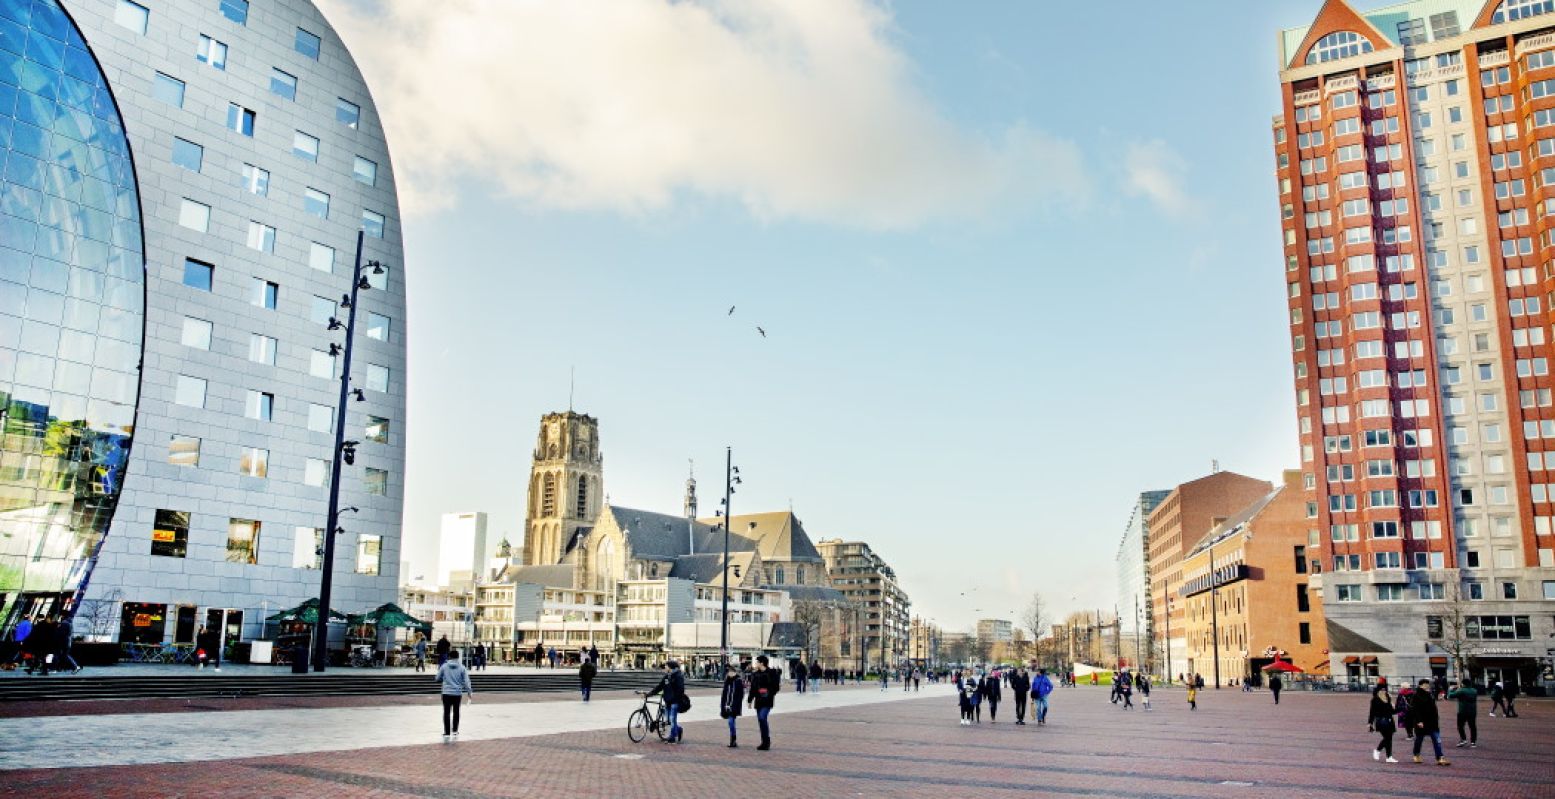 Een deel van de Markthal op links, met op de achtergrond de Laurenskerk. Foto: Rotterdam Make It Happen © Iris van den Broek.